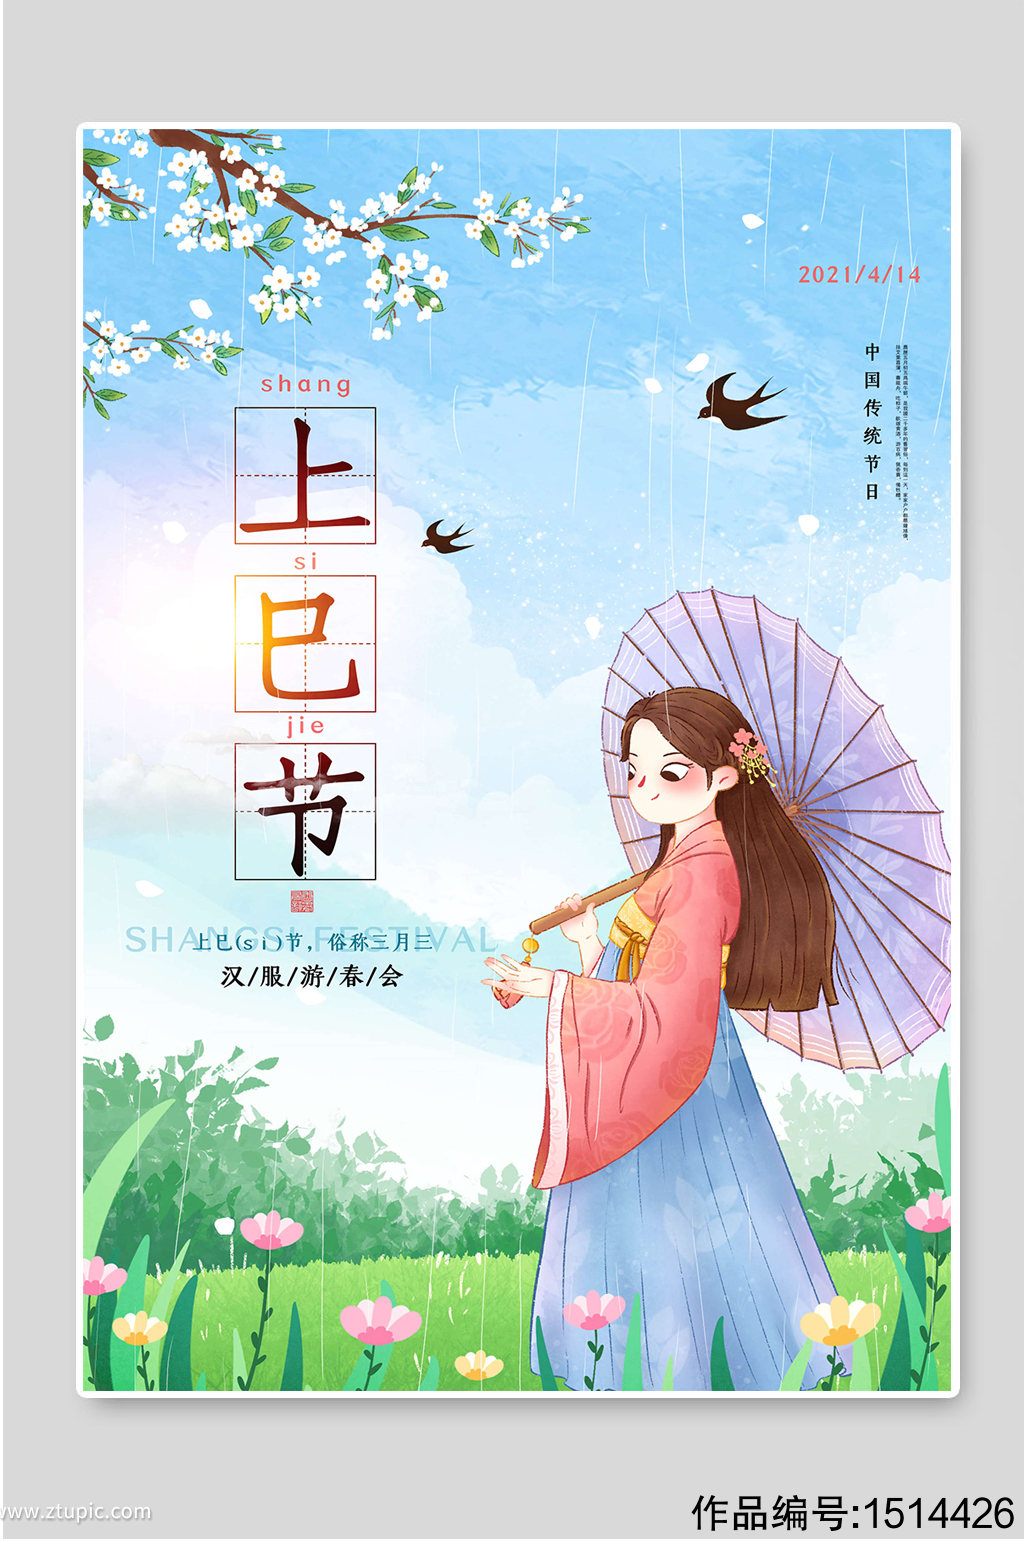 中国传统节日上巳节宣传海报